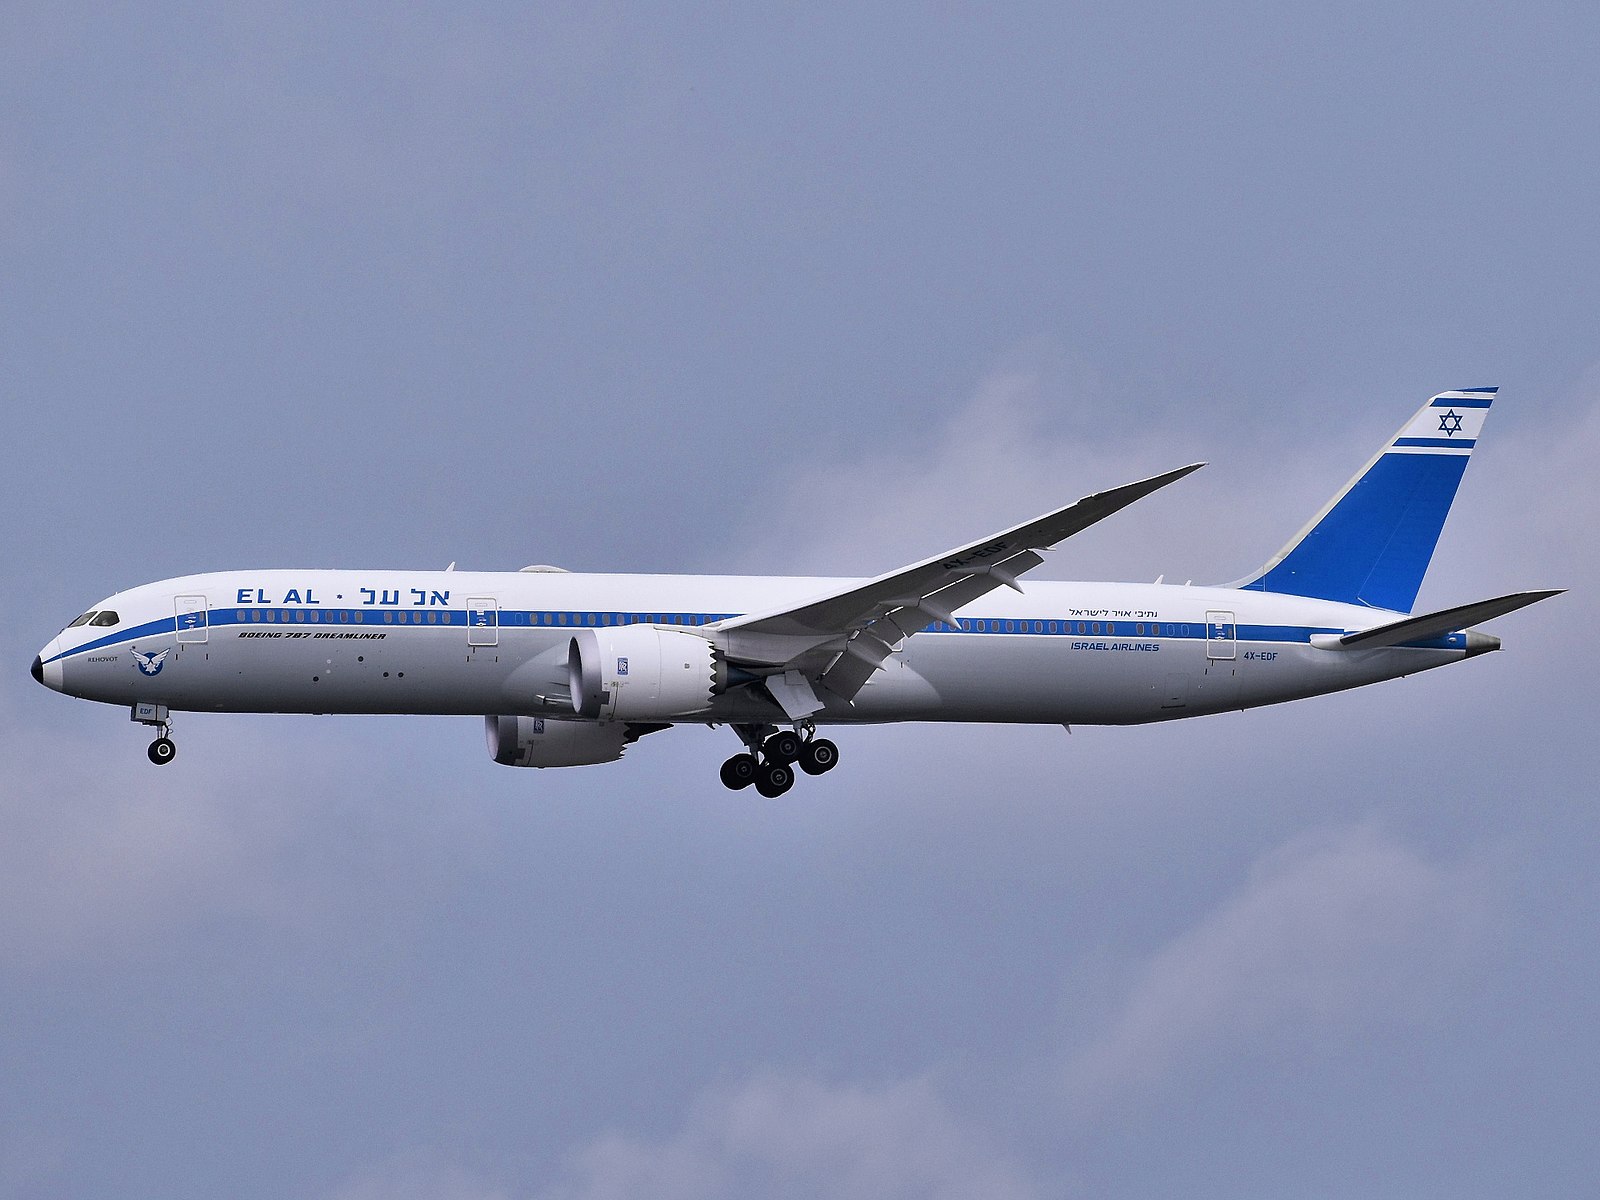 L'image illustre un vol annulé el al Israel airlines.